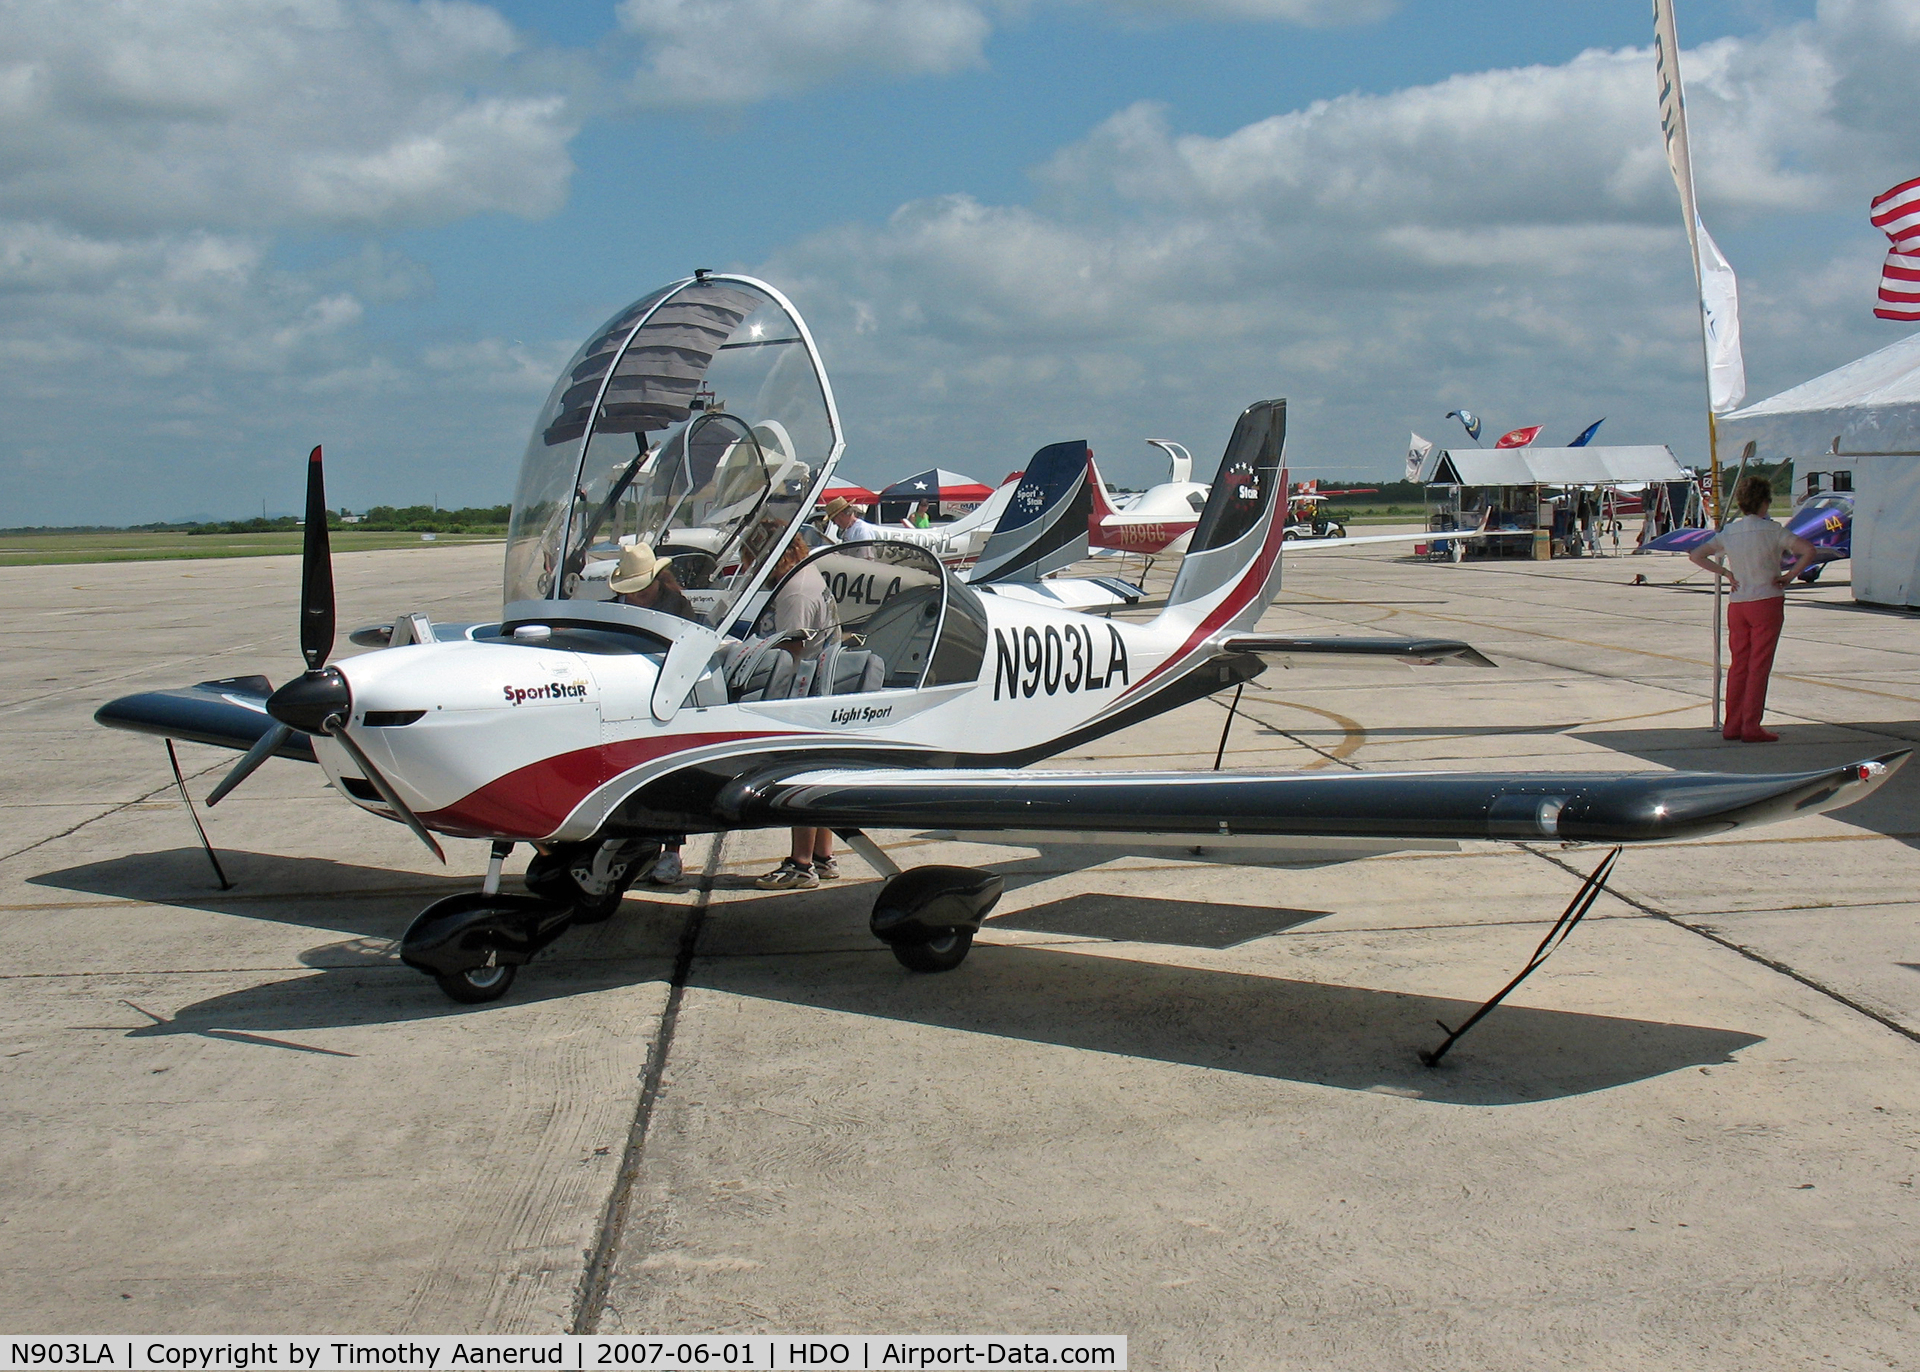 N903LA, 2007 Evektor-Aerotechnik Sportstar Plus C/N 20070903, The EAA Texas Fly-In